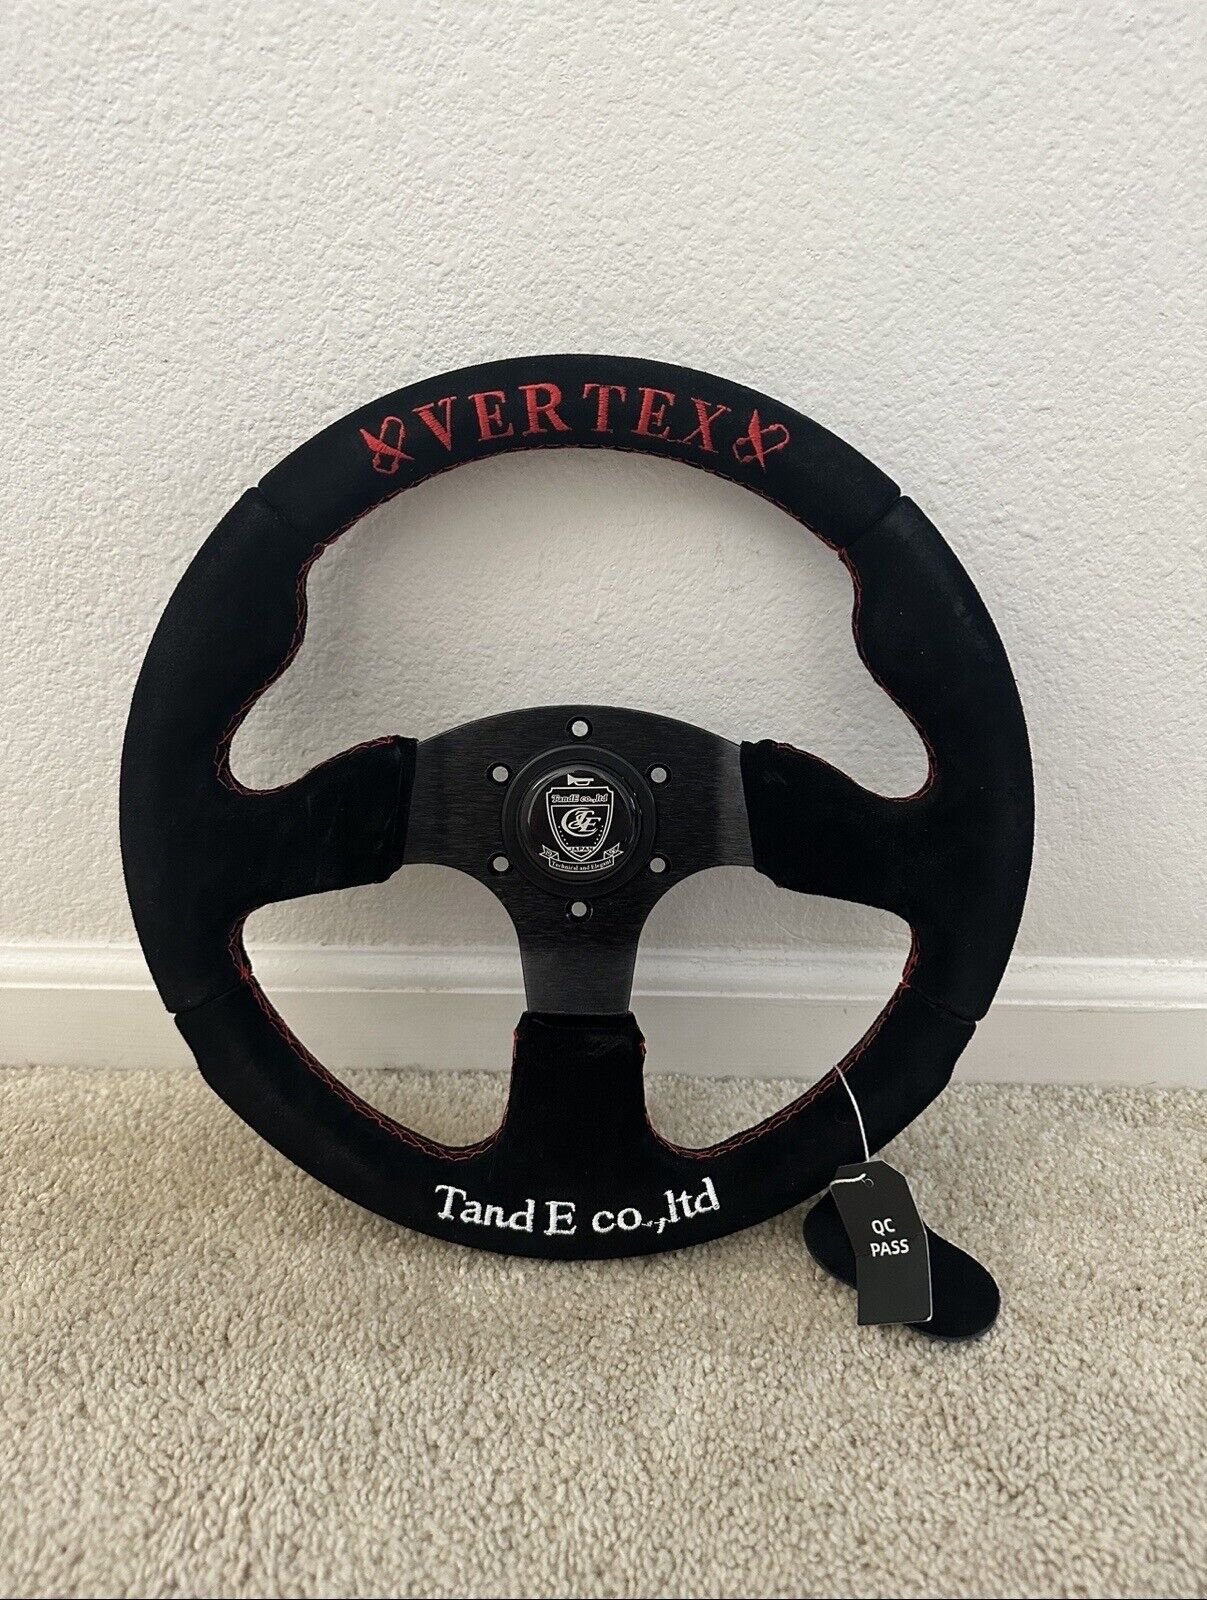 330mm Dish Steering Wheel - Fit 6 hole Hub Like Vertex Nardi NRG Grip